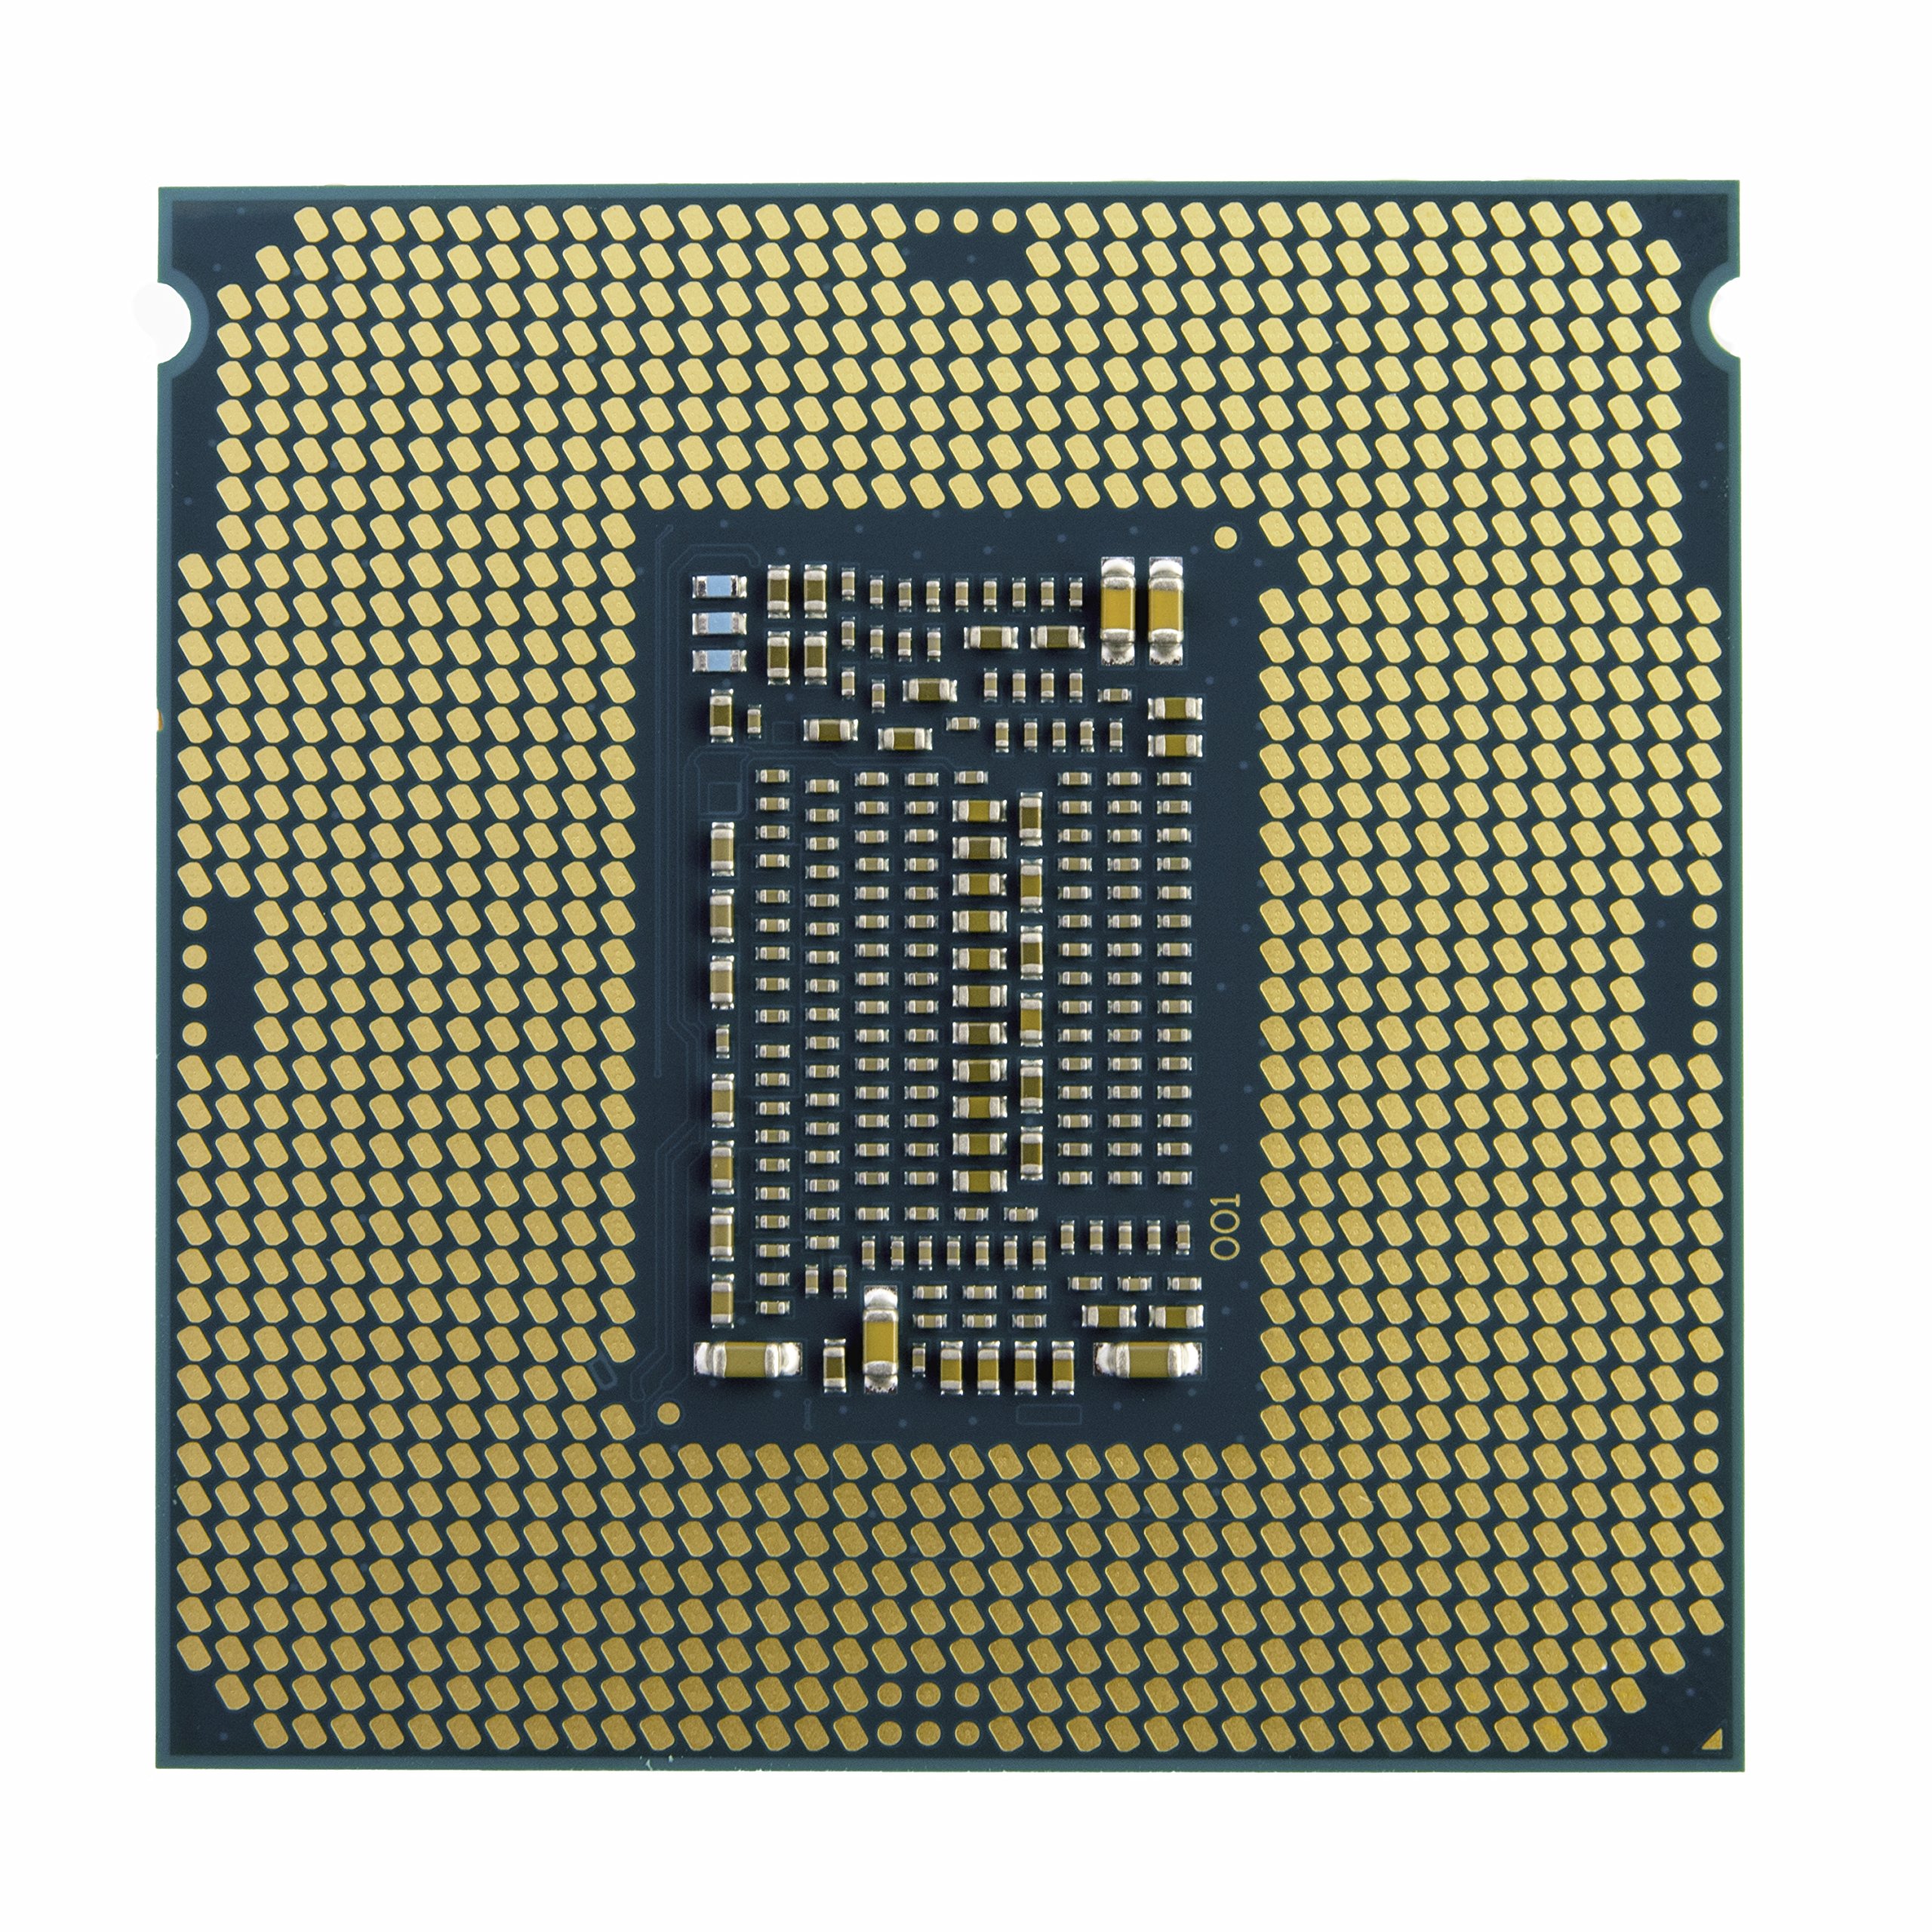 Intel Core i7-8700 6 Cores 3.2GHz 12MB 8 GT/s 65W LGA 1151 CPU SR3QS (Renewed)